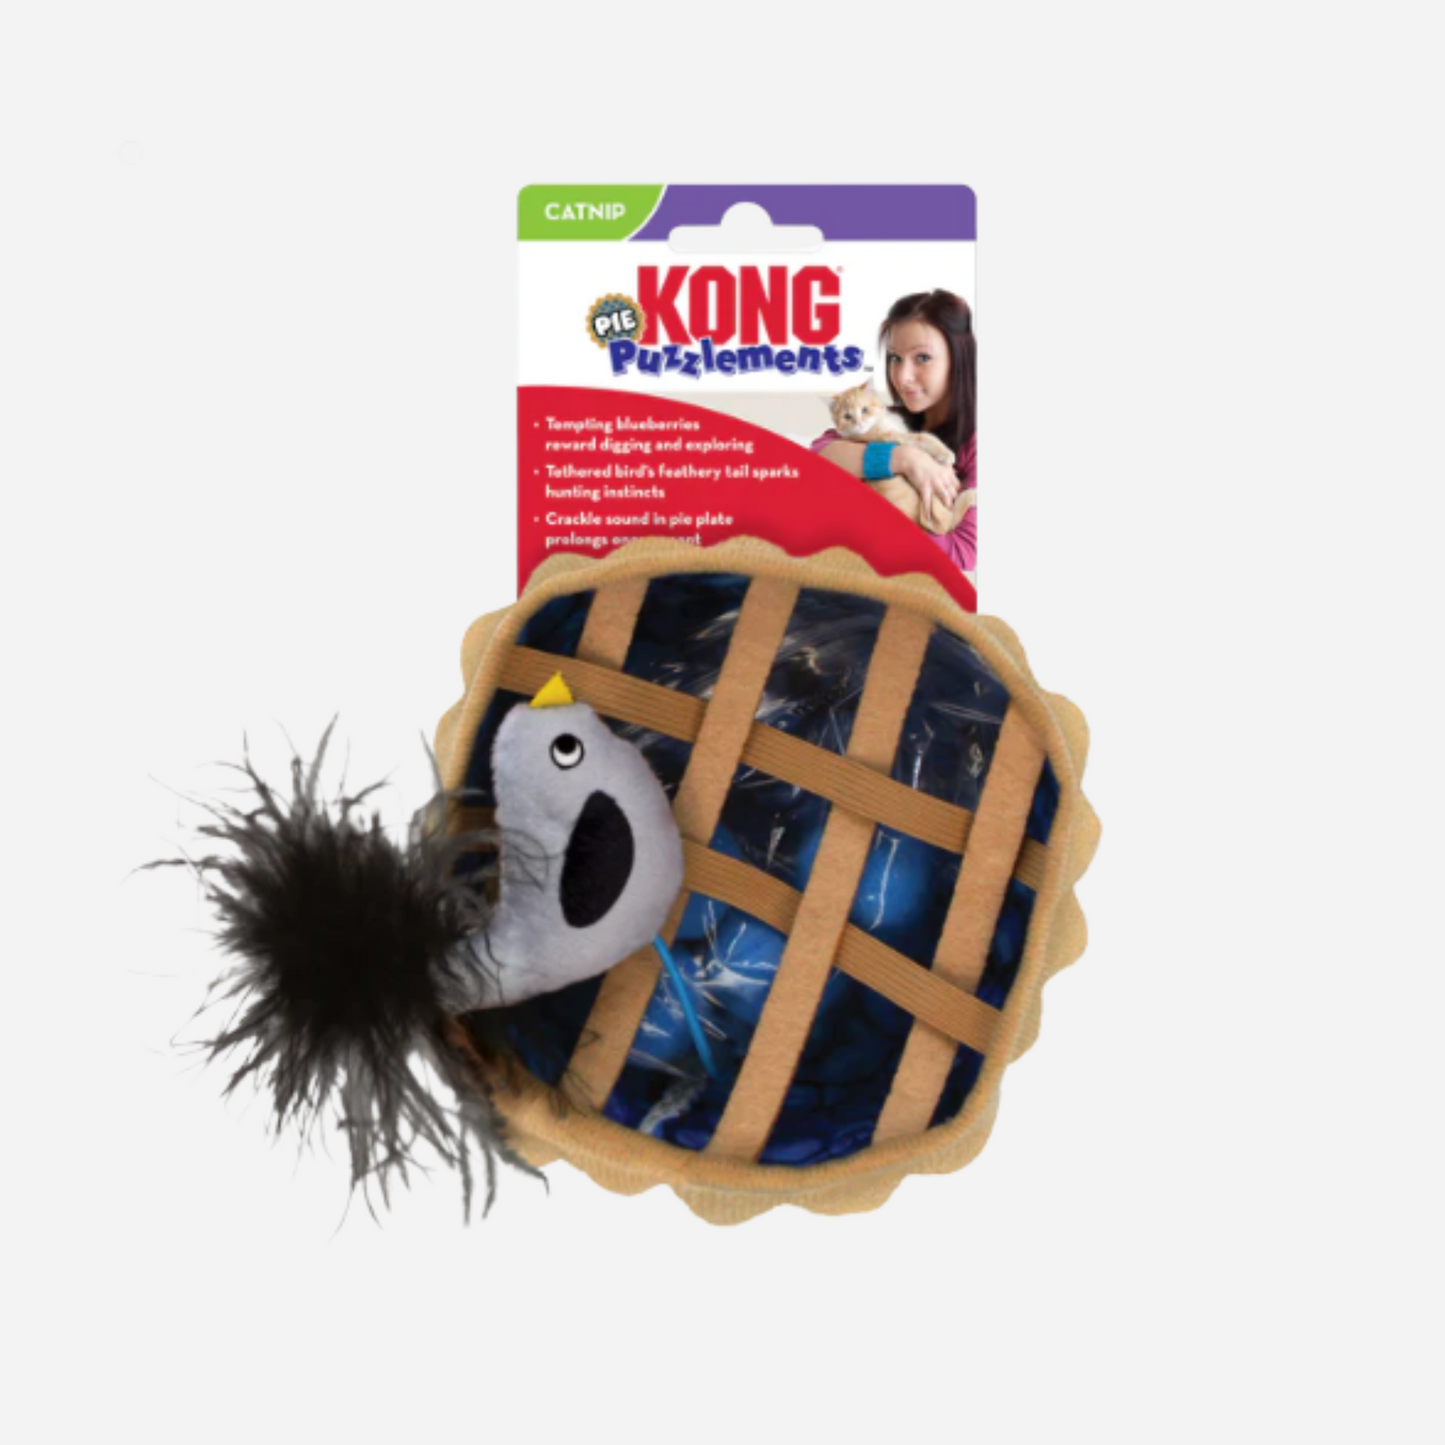 KONG Puzzlements pie - Kattelegetøj